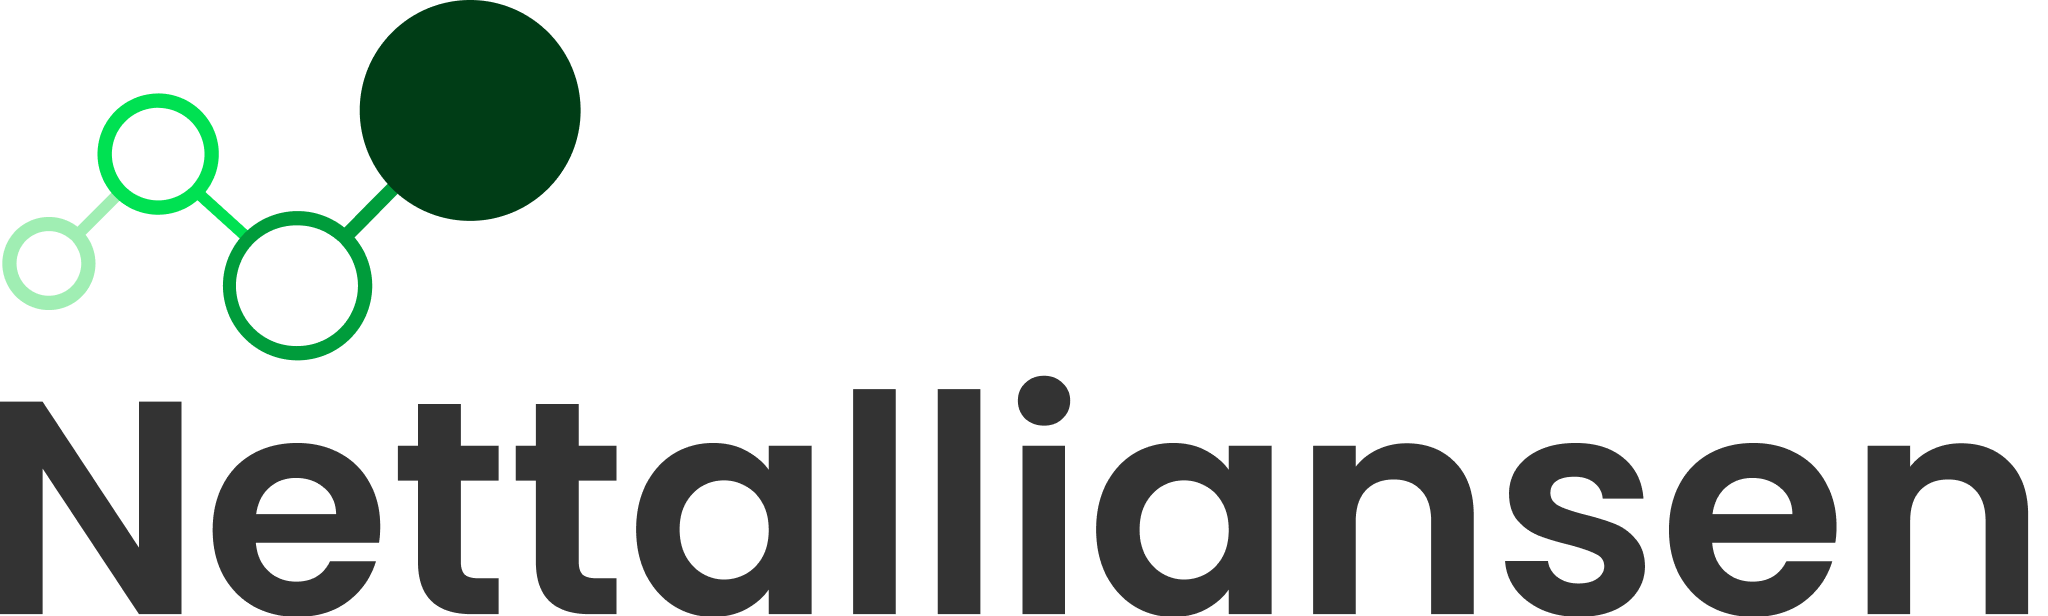 Ny Nettalliansen Logo